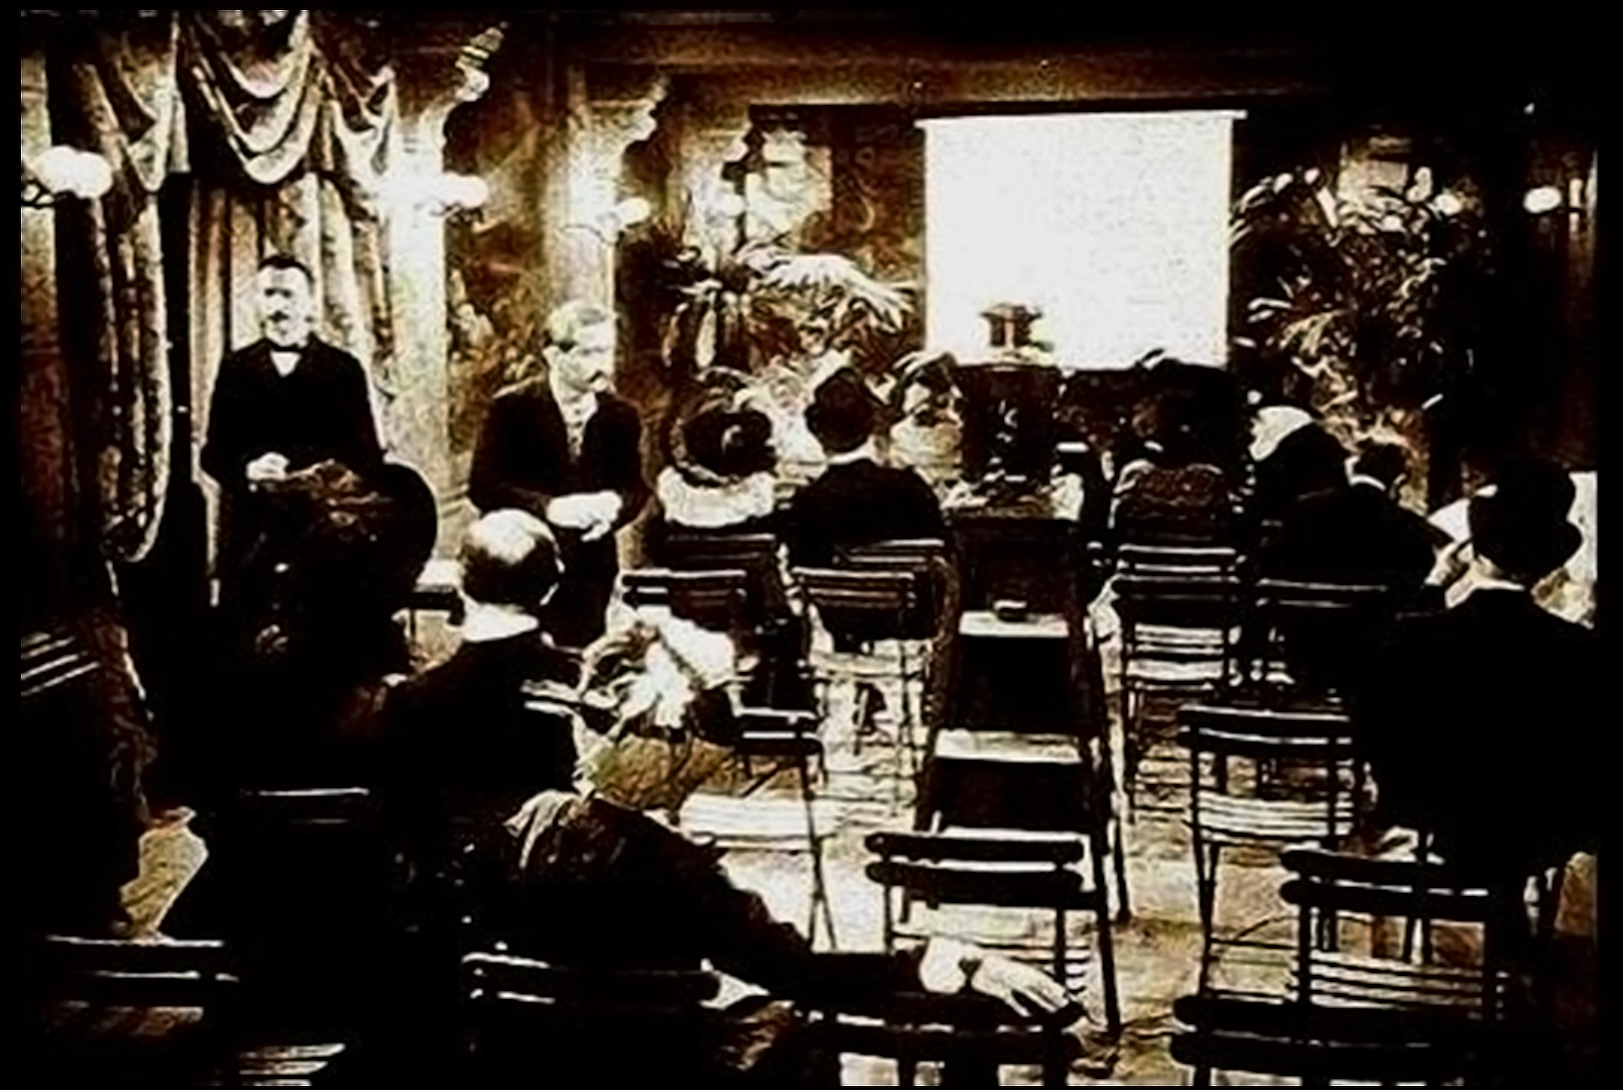 Primera proyección cinematográfica comercial a cargo de Auguste y Louis Lumière, inventores del cinematógrafo. Salón Indio del Gran Café del Boulevard de París, 28 de diciembre de 1895.